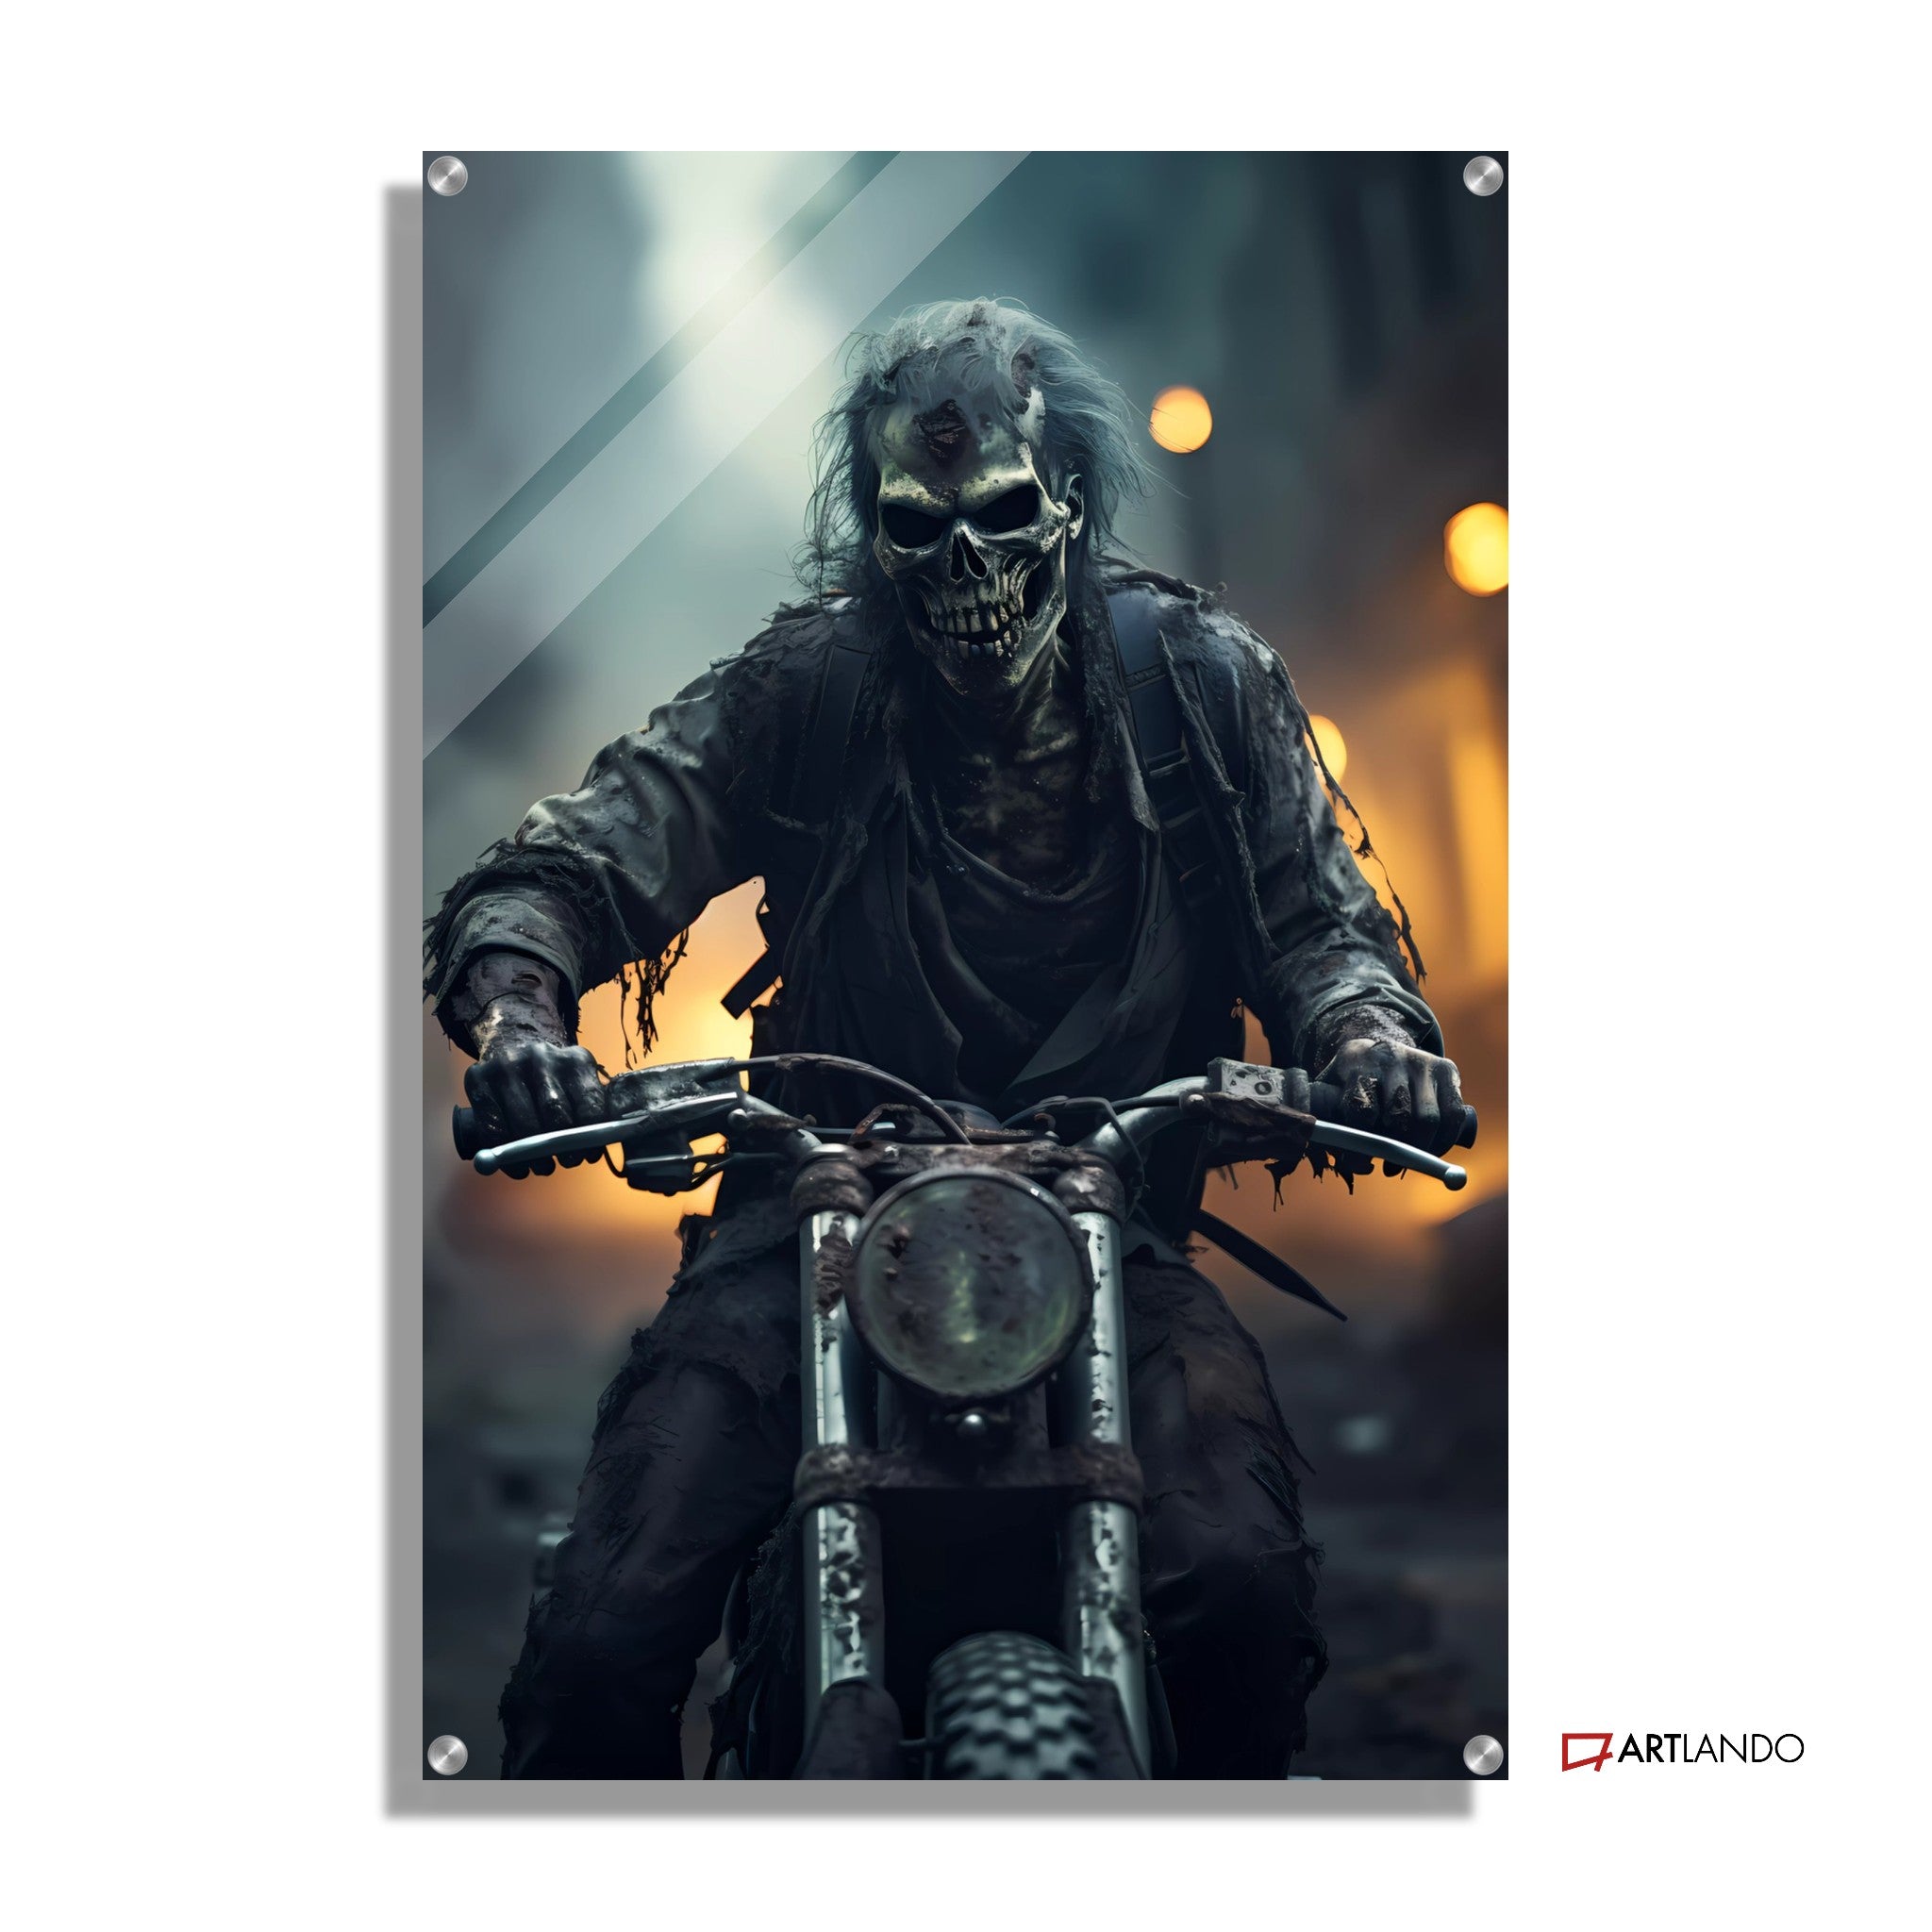 Post-Apokalyptische Zombies auf Motorrad in der Strasse